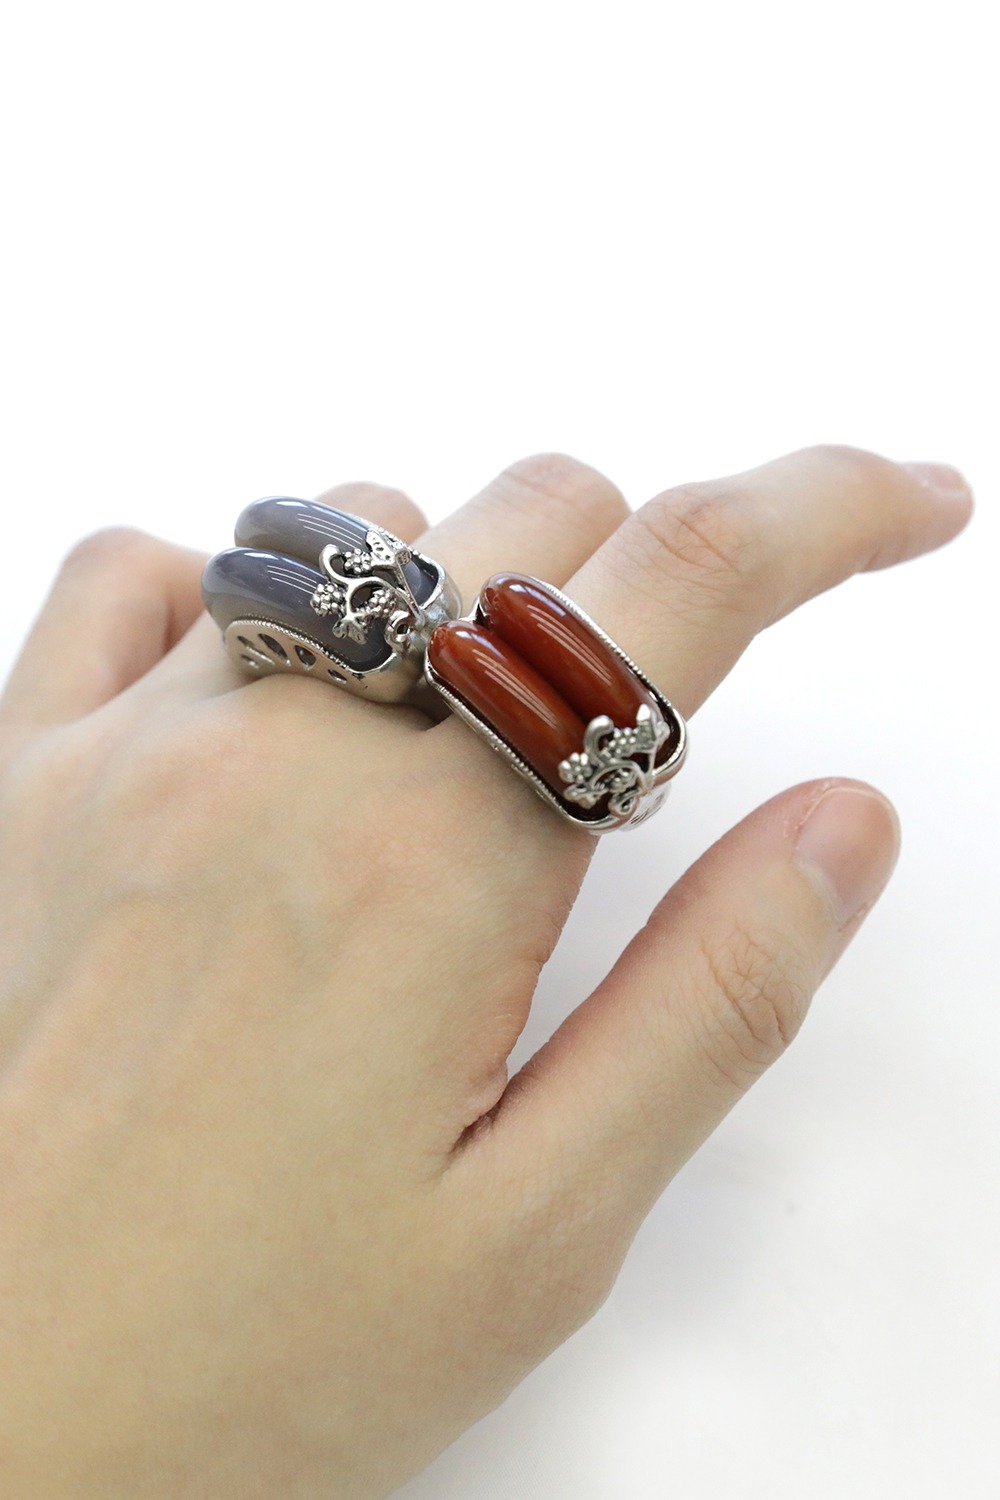 [Matching]Gemstone Hanbok Ring [3 Type]